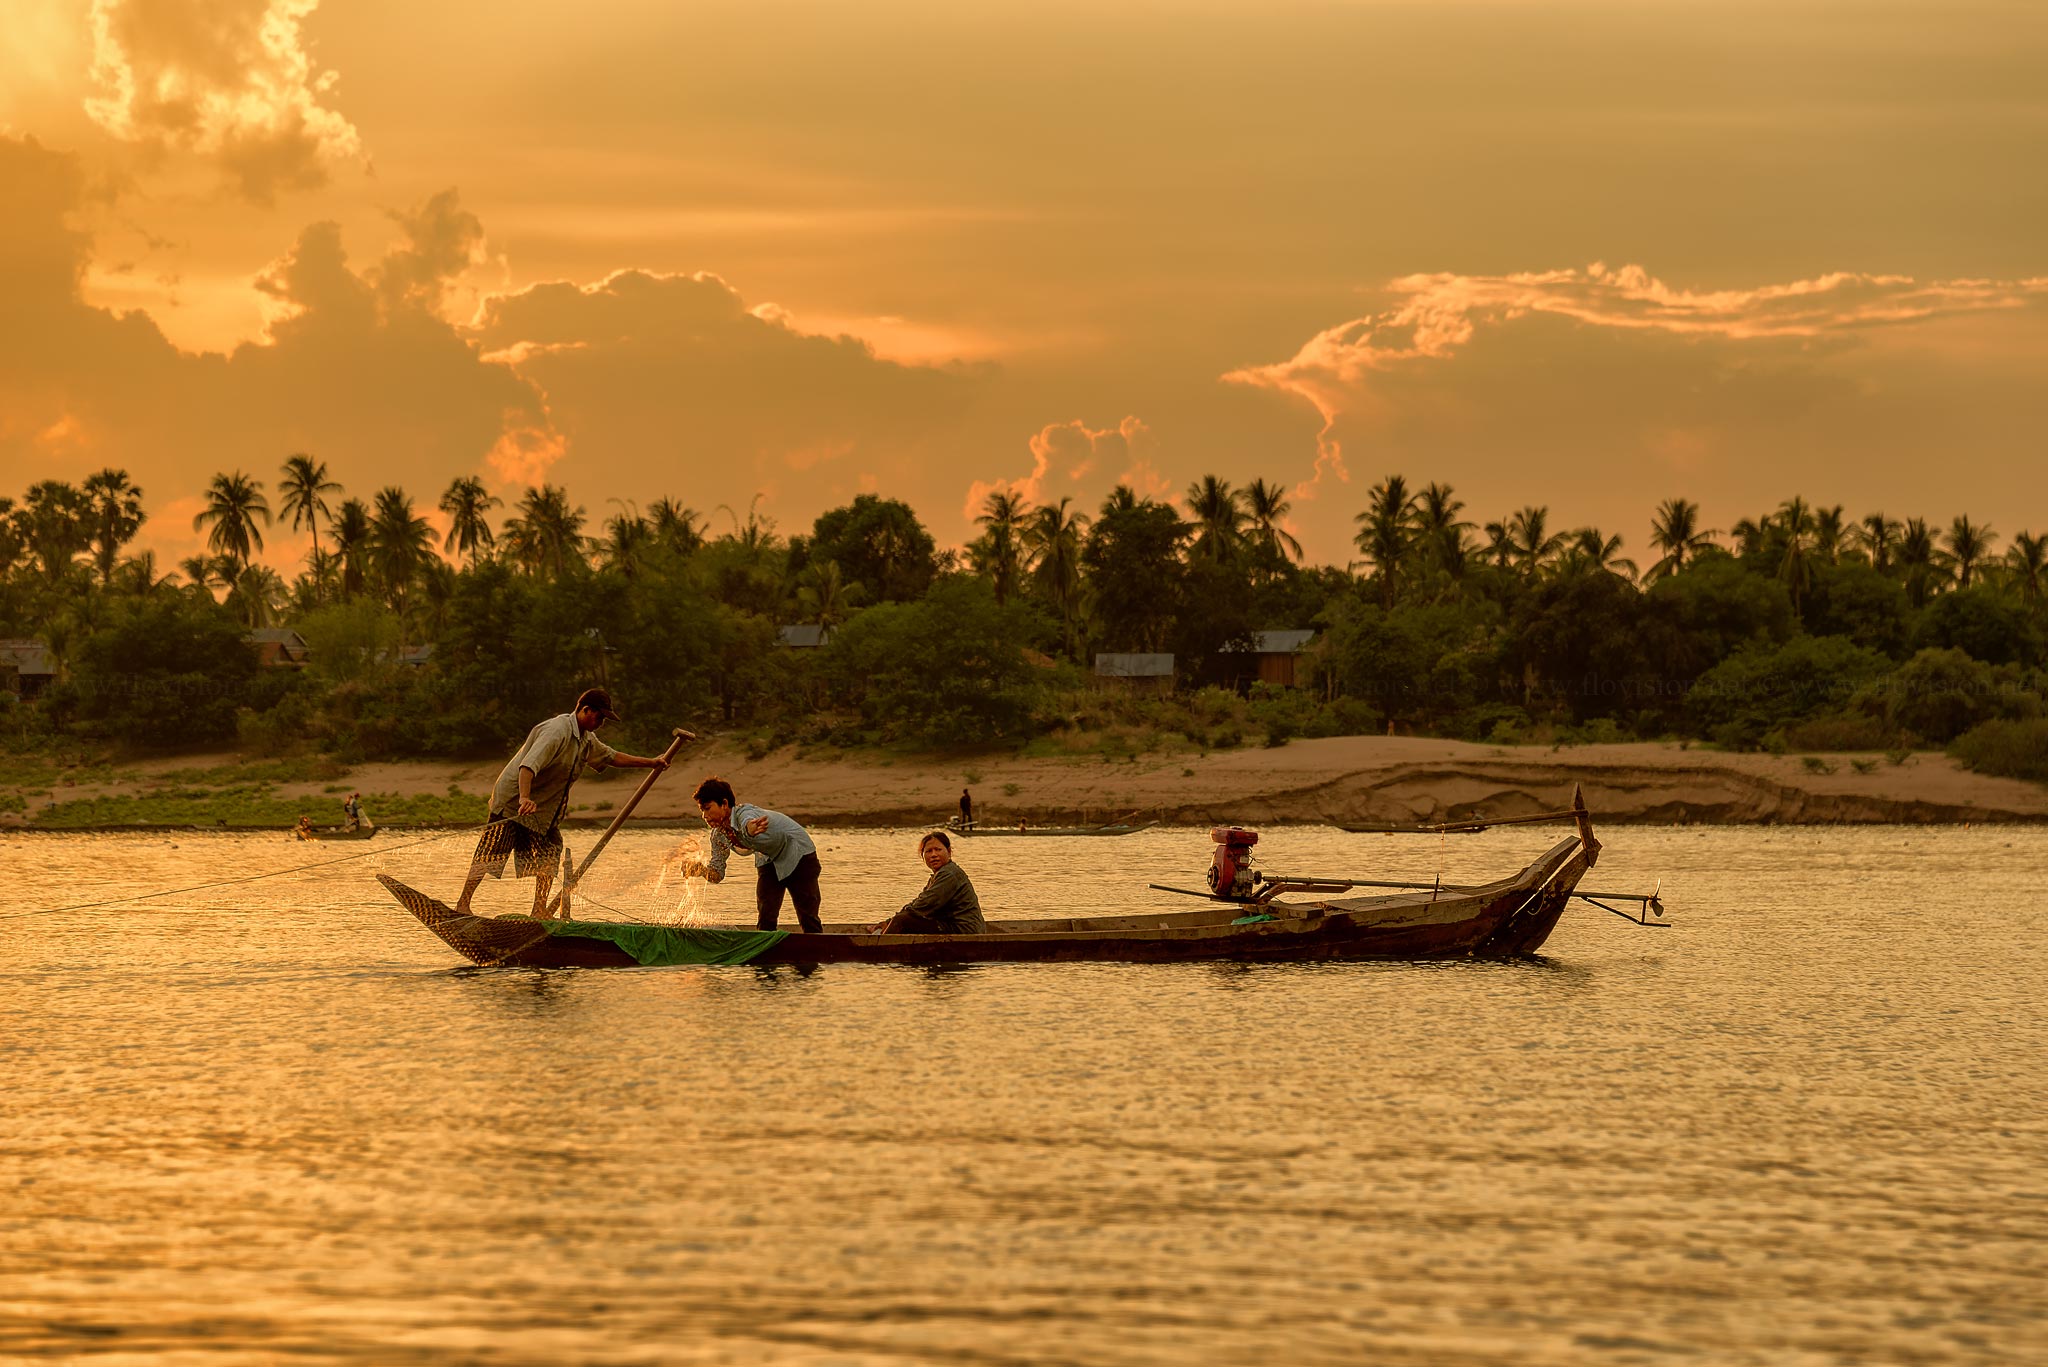 Sunset fishing, Cambodia